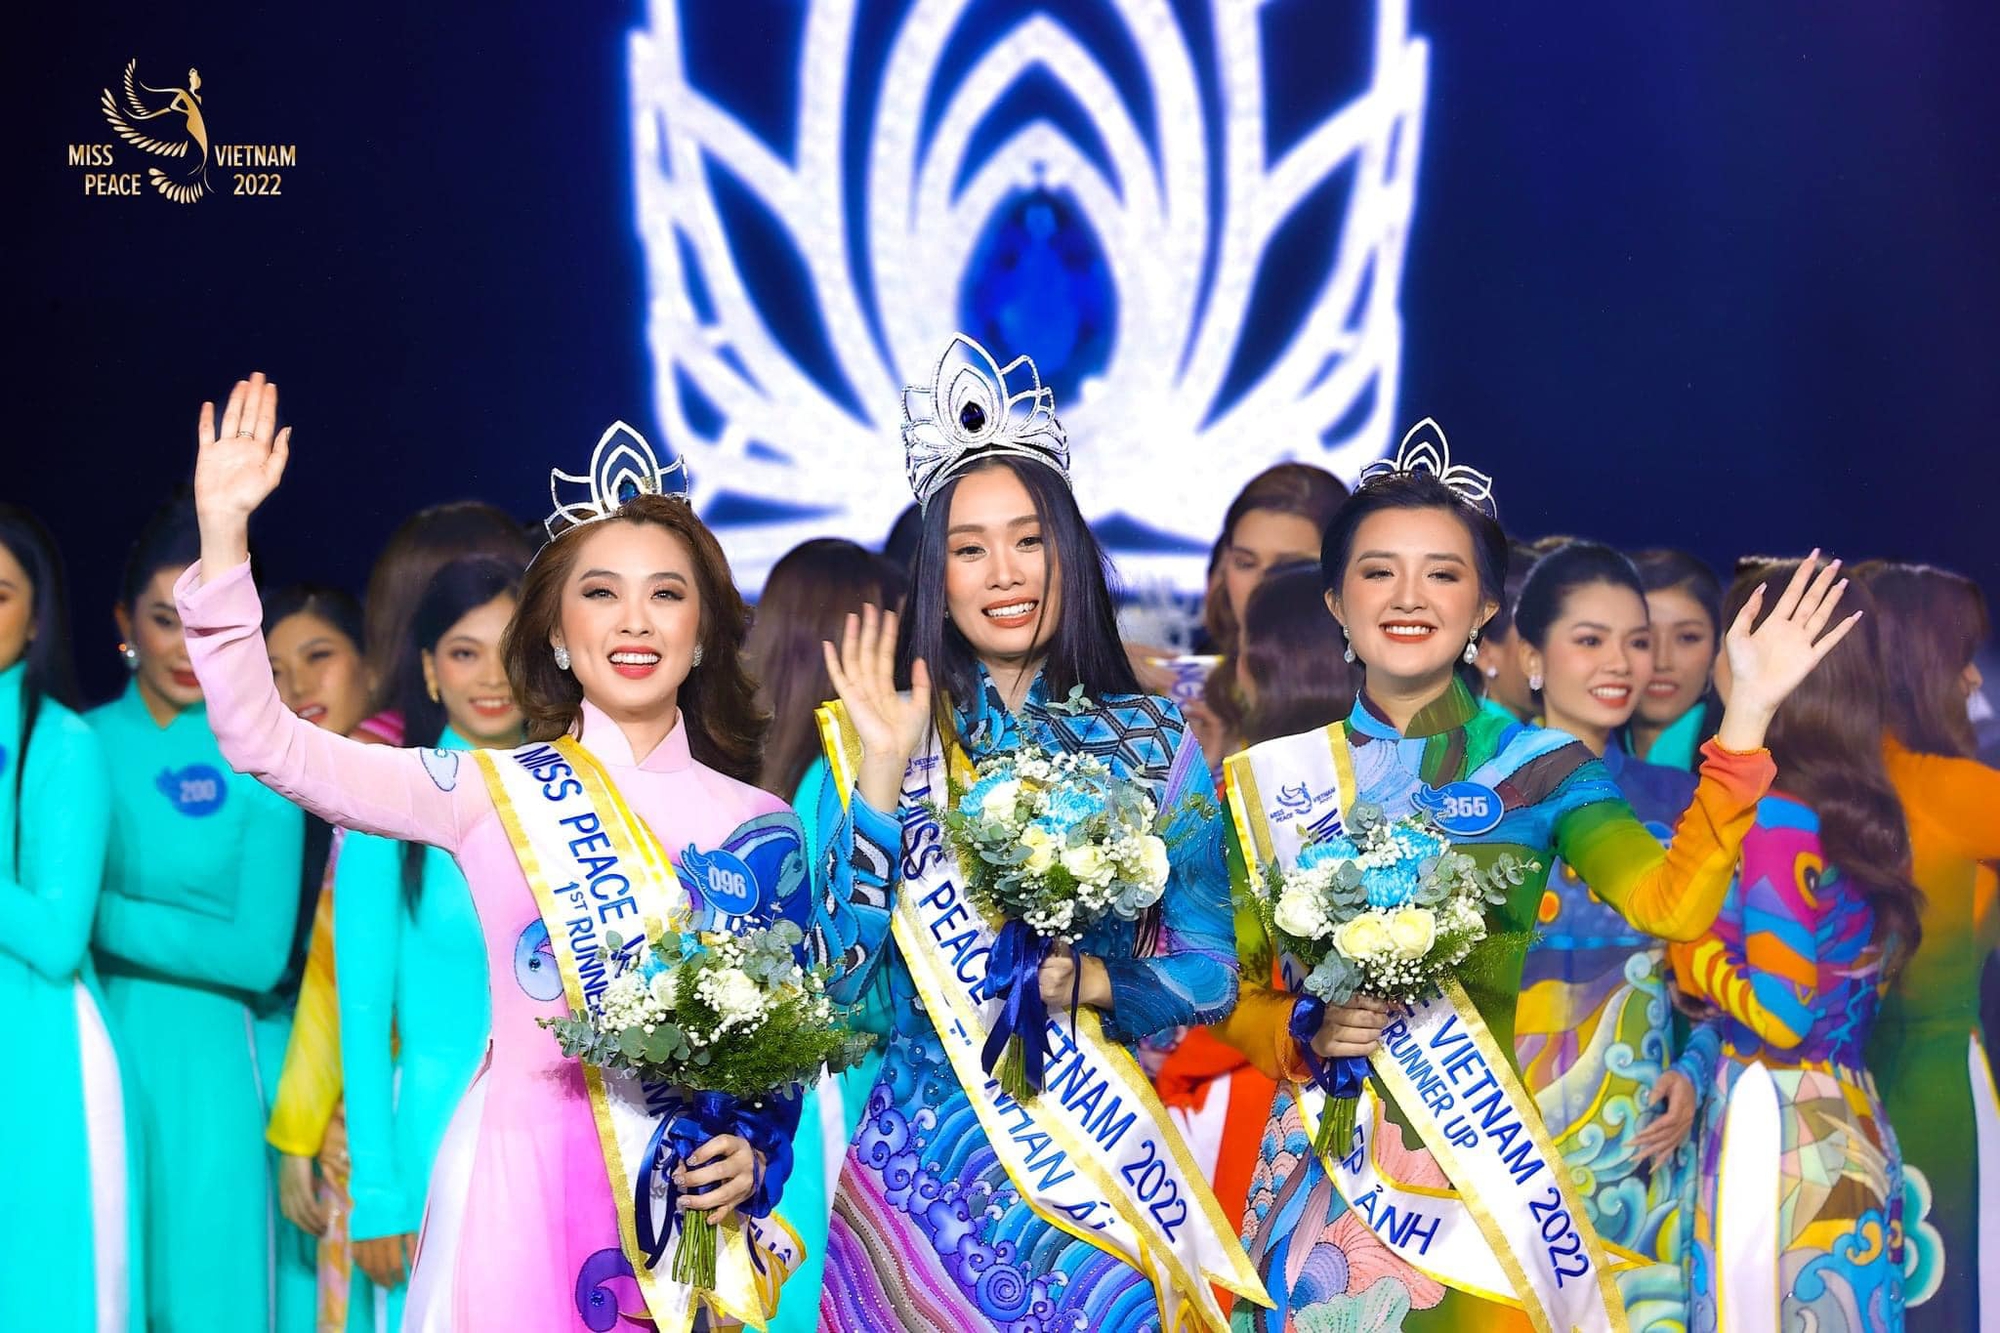 Trần Thị Ban Mai – thông dịch viên sinh năm 2000 đăng quang Miss Peace Vietnam 2022 - Ảnh 1.